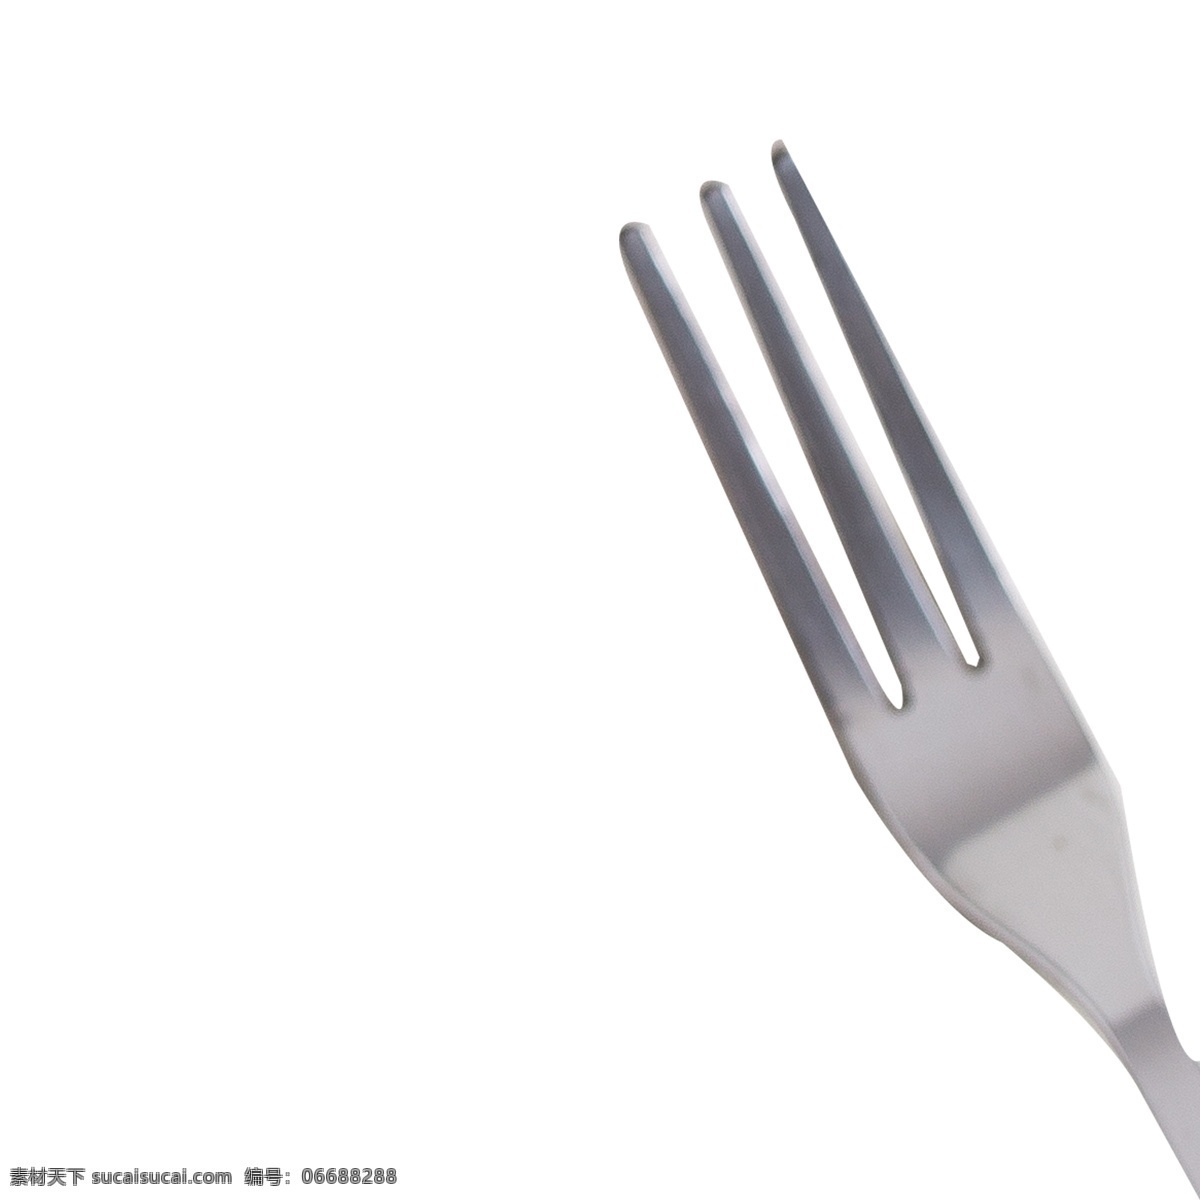 银白色 叉子 免 抠 图 银器 时尚餐具 卡通图案 卡通插画 吃饭的工具 刀叉 银白色的叉子 免抠图